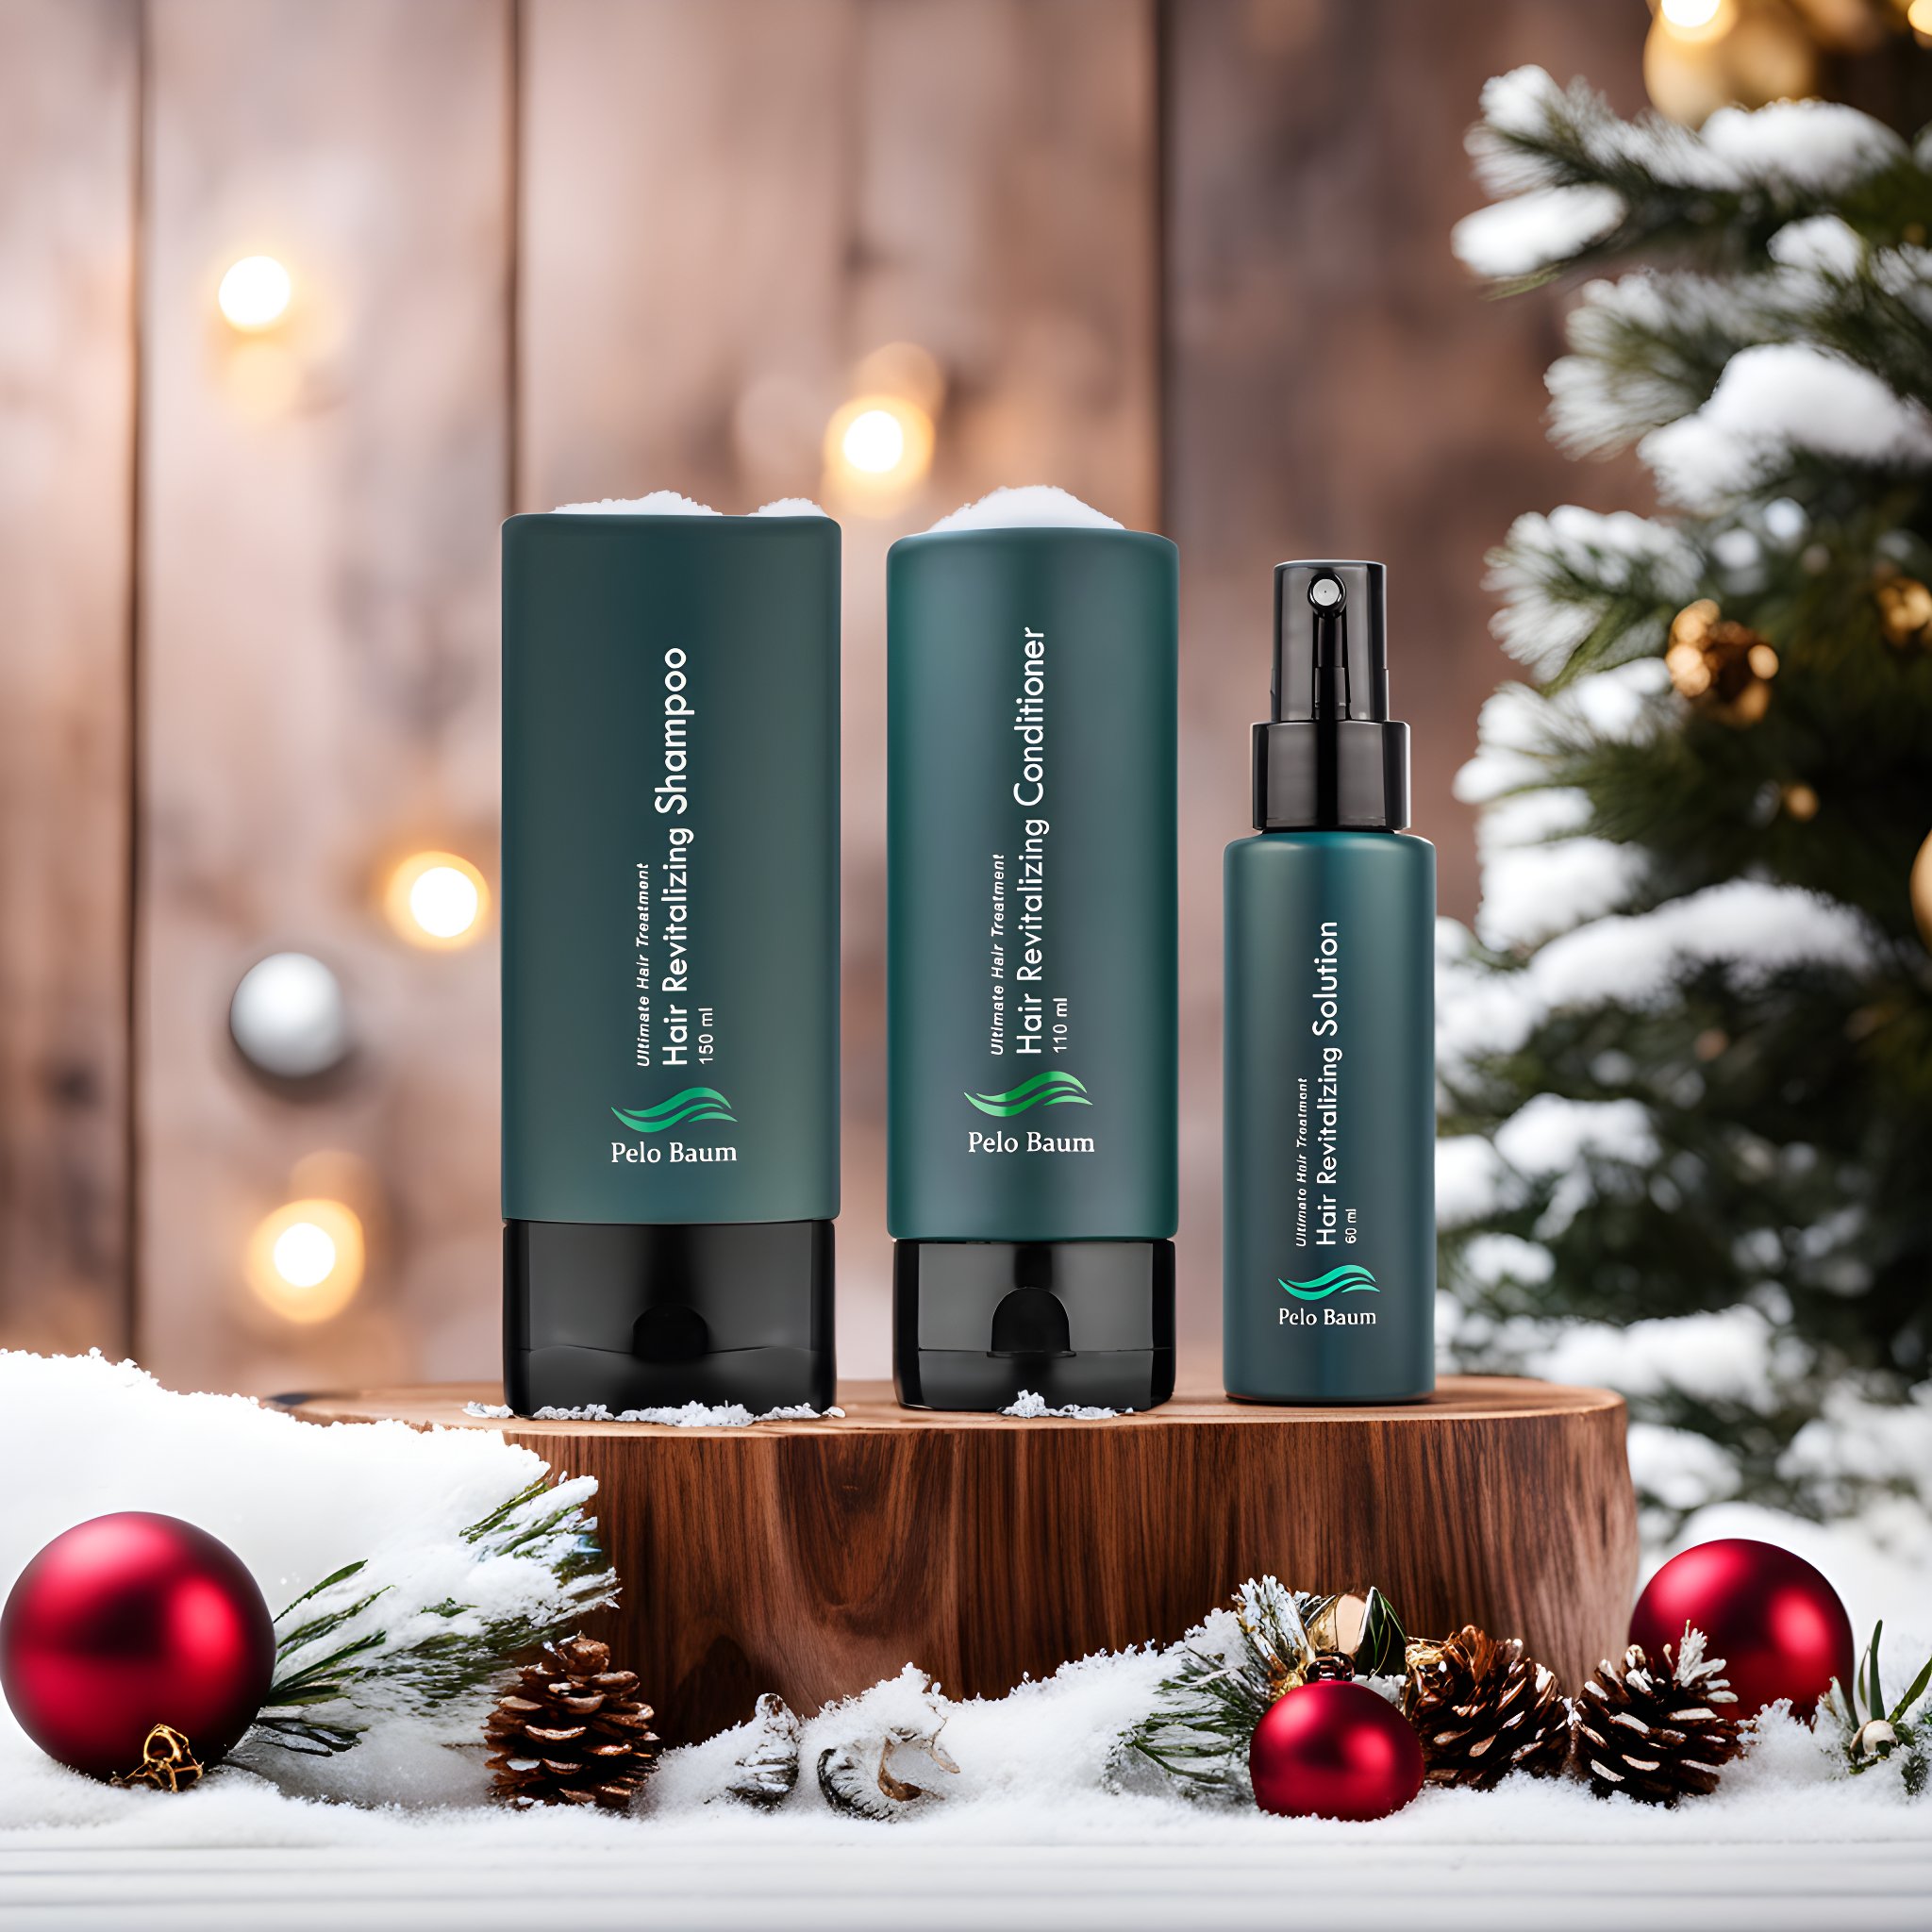 Vianočný balíček proti vypadávaniu vlasov: Pelo Baum sérum + šampón + kondicionér